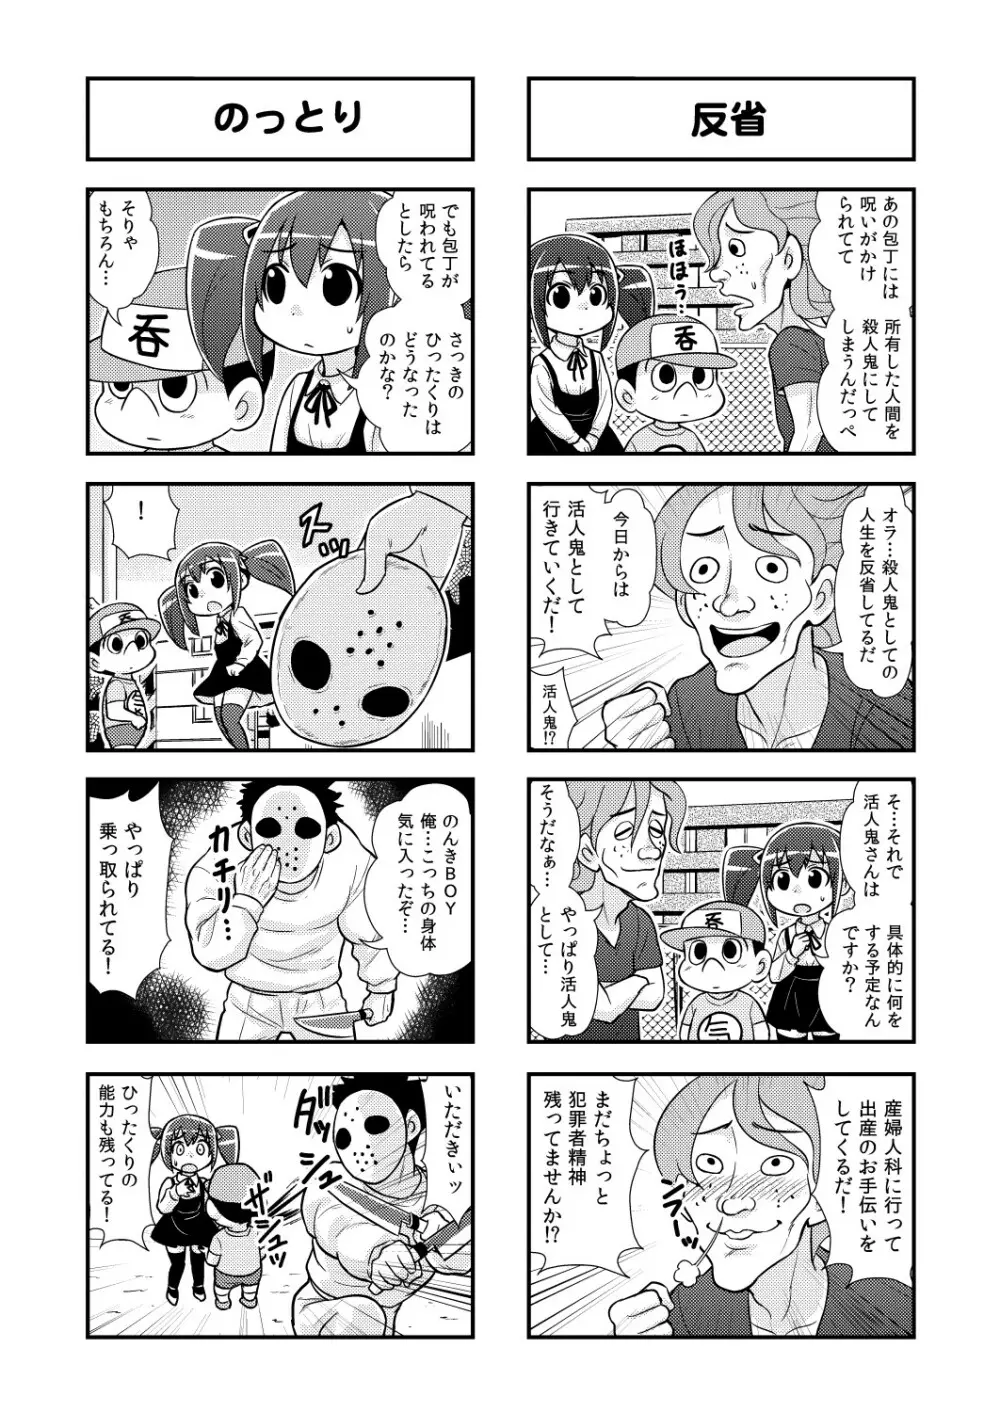 のんきBOY 1-38 48ページ